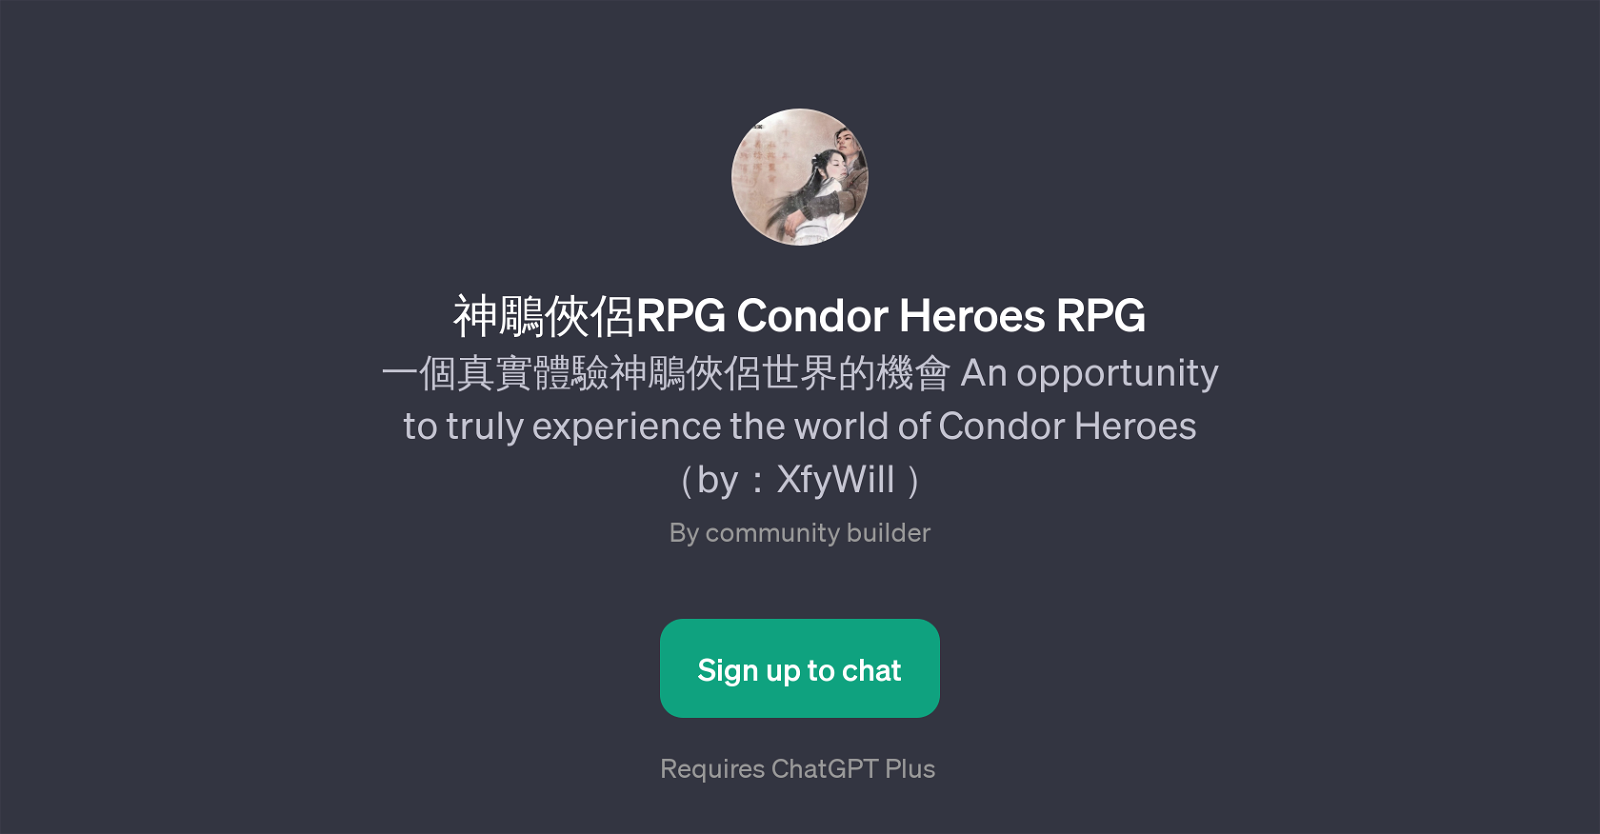 RPG Condor Heroes RPG website